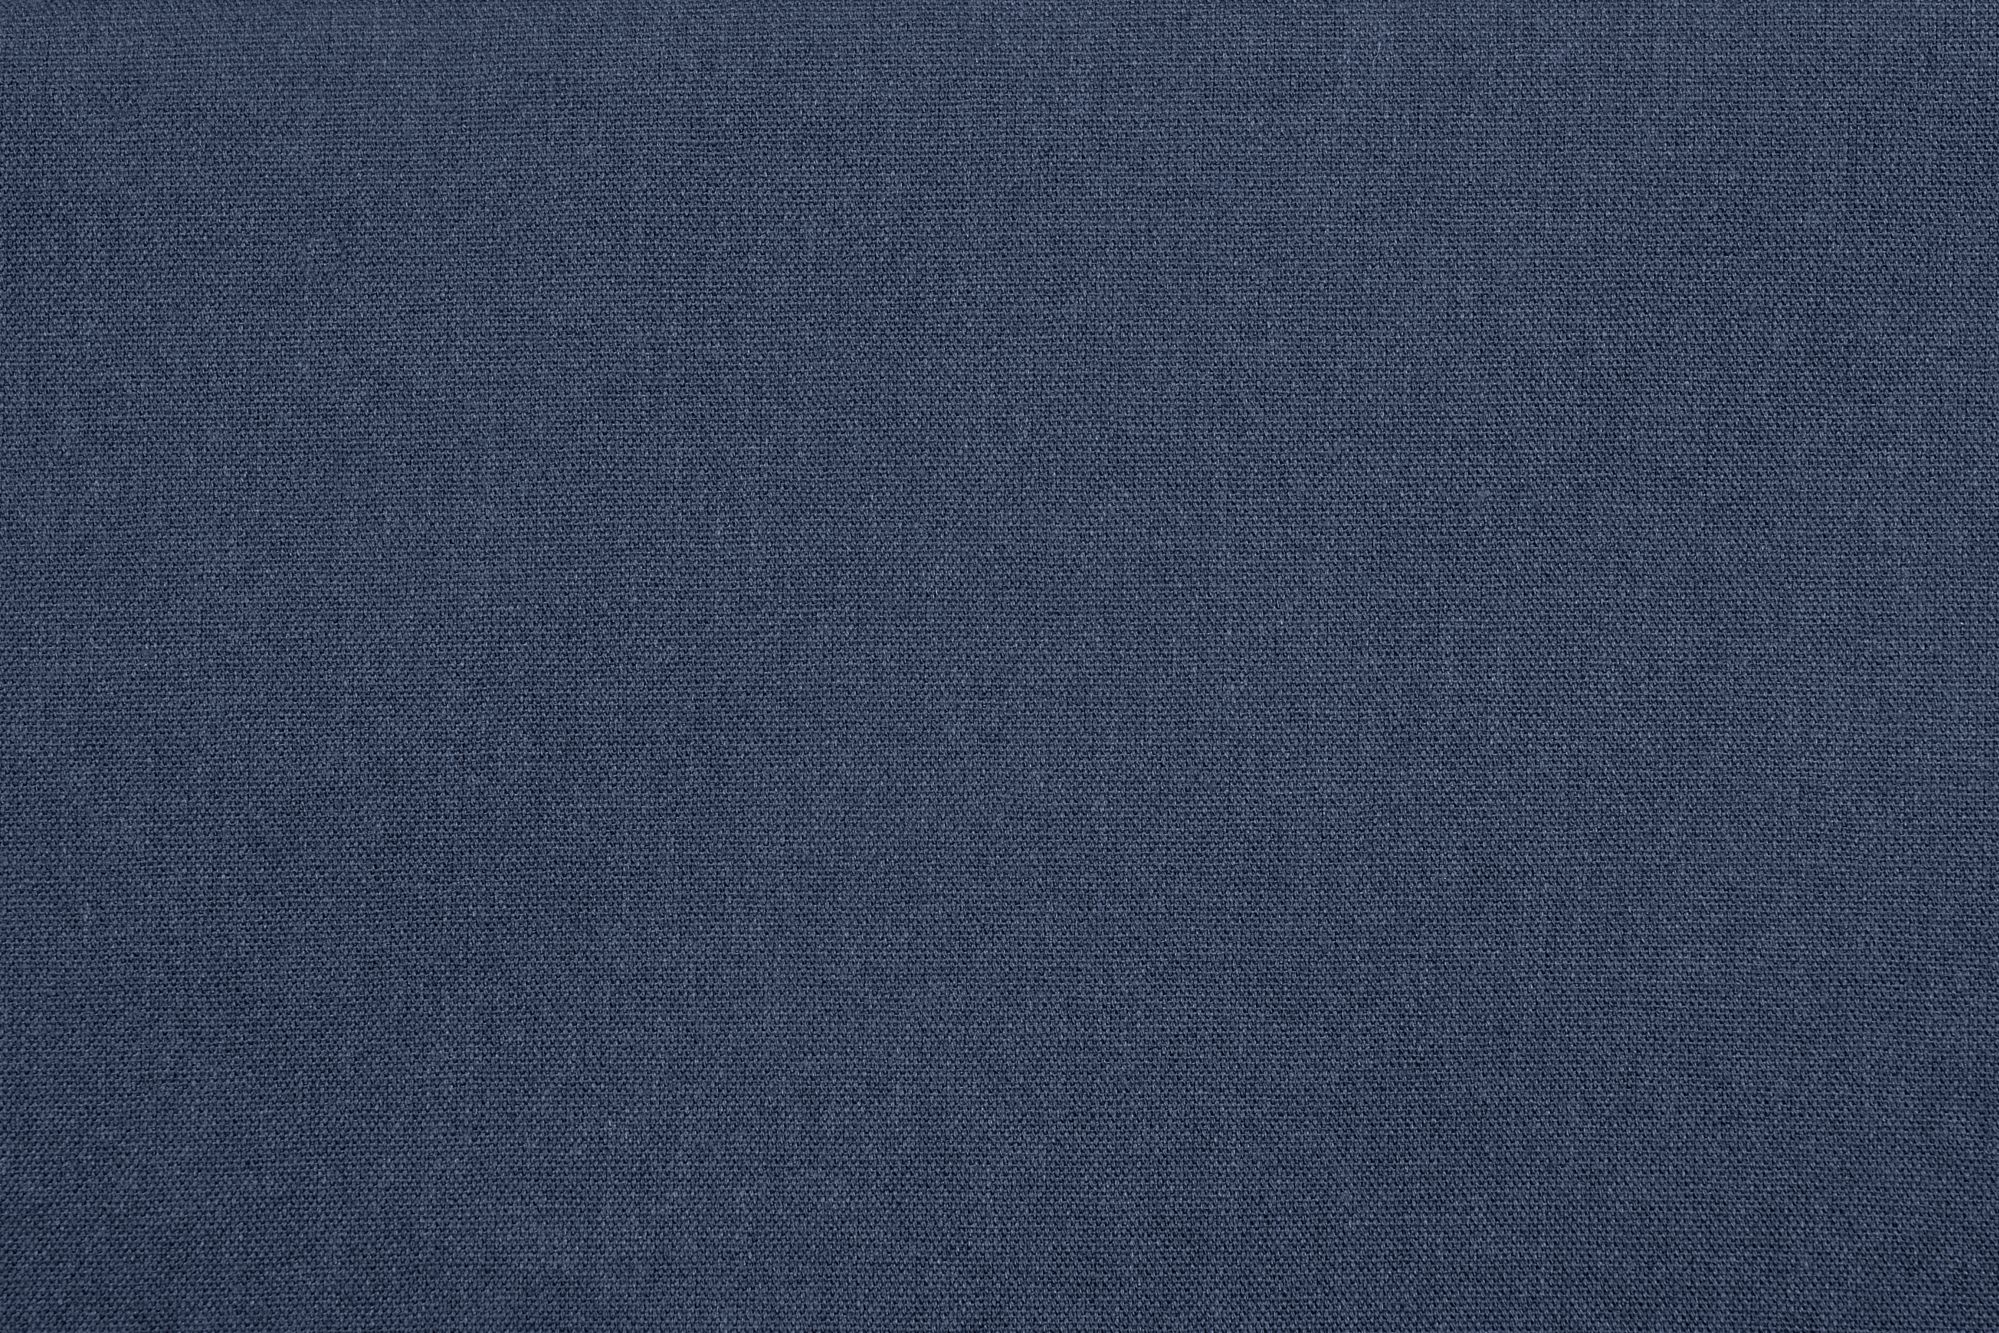 Текстура джинсов. Текстура джинсовой ткани. Джинсовая ткань фон. Фактура джинсы. Синяя ткань текстура.